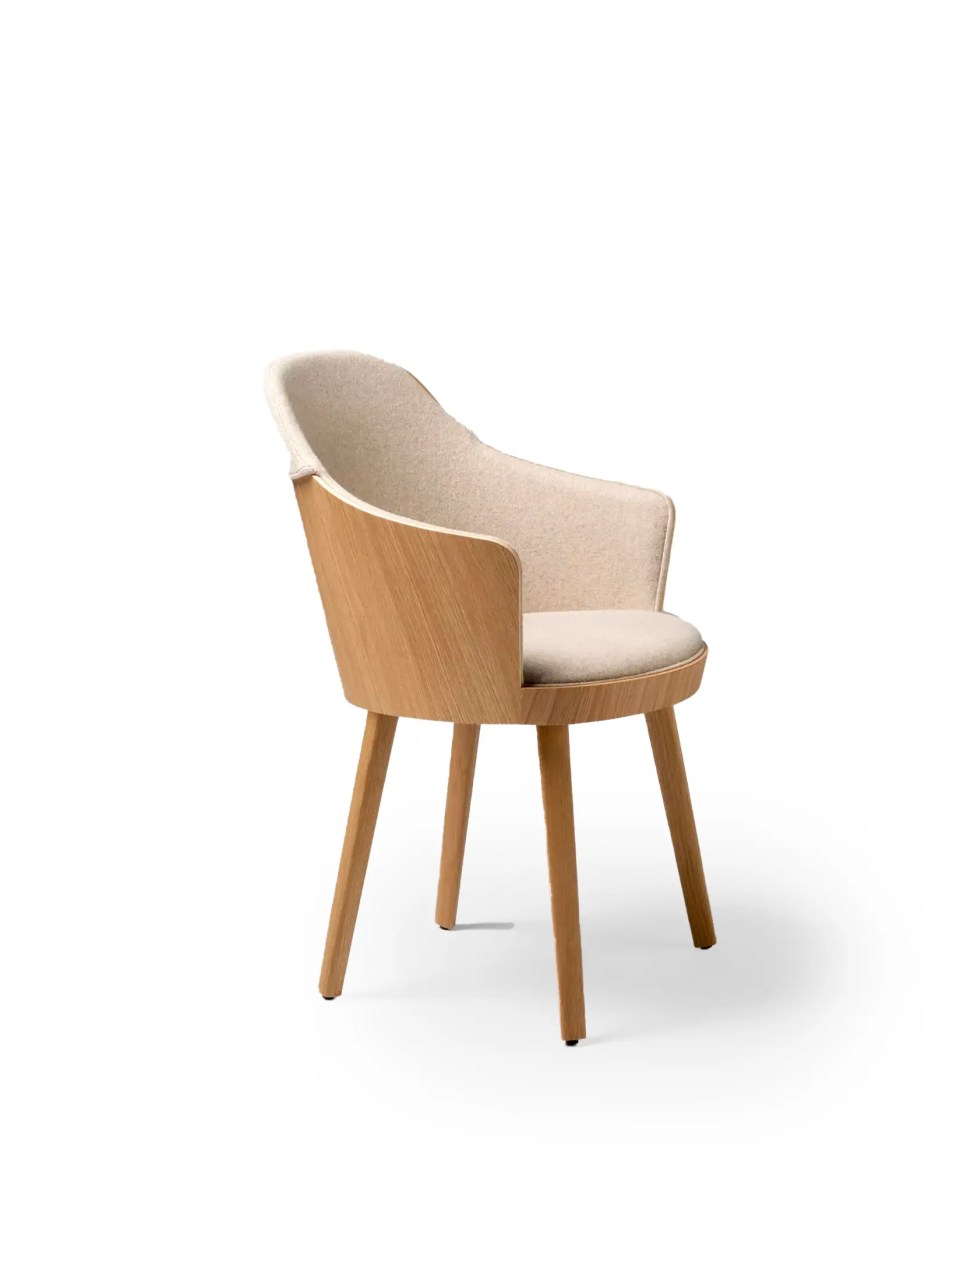 chaises en bois et tissus avec accoudoirs design beige et bois de chêne pour restaurants, cafétéria et bar